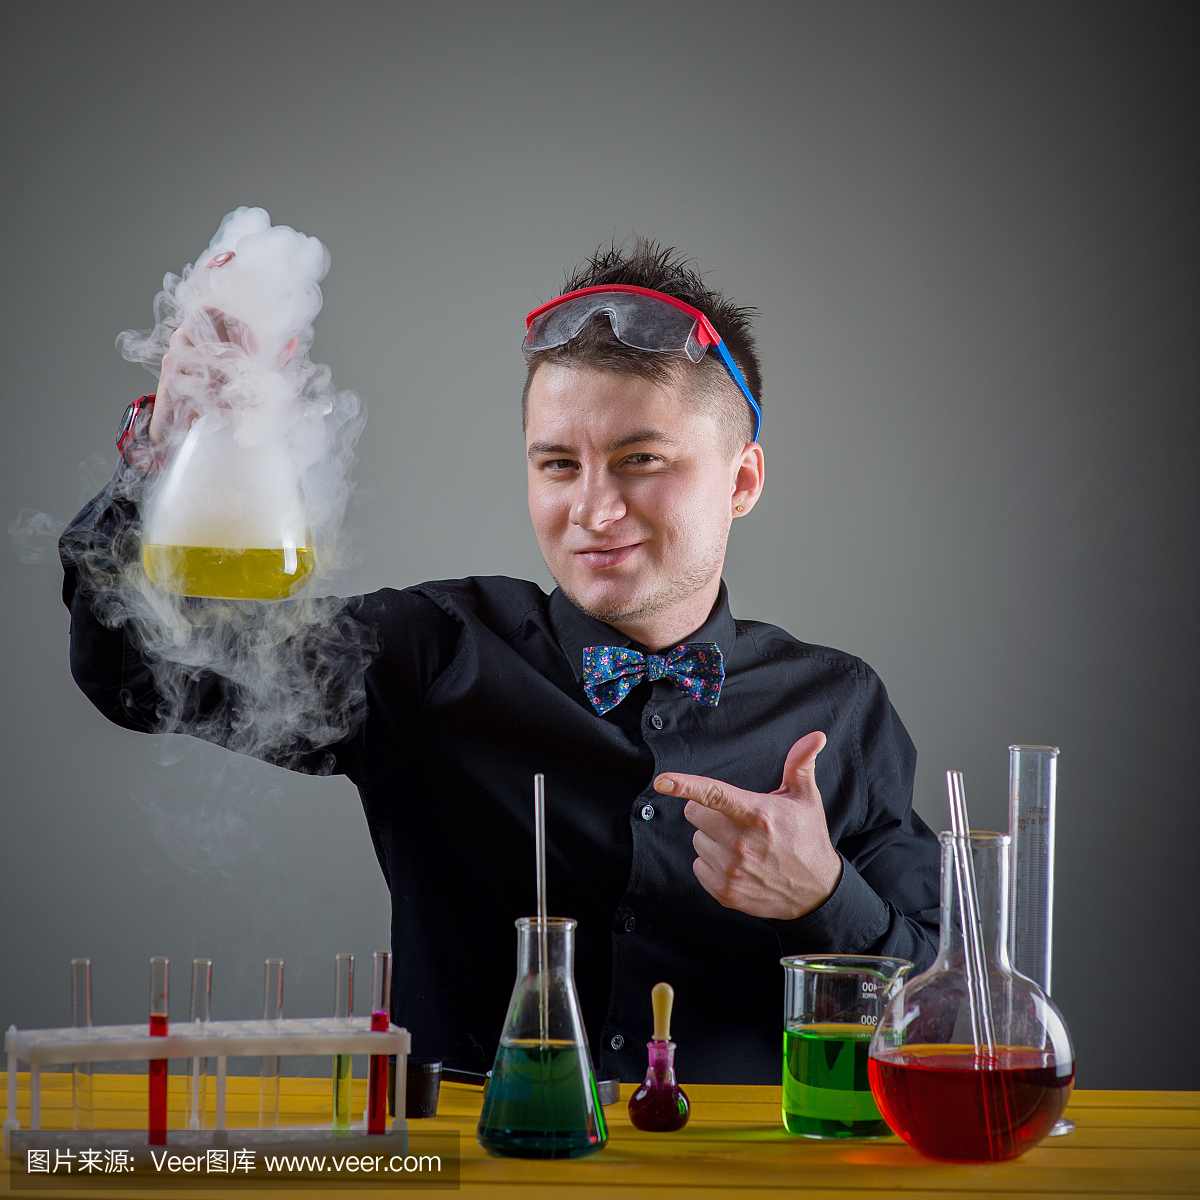 化学实验室的魔术师准备神奇的解决方案